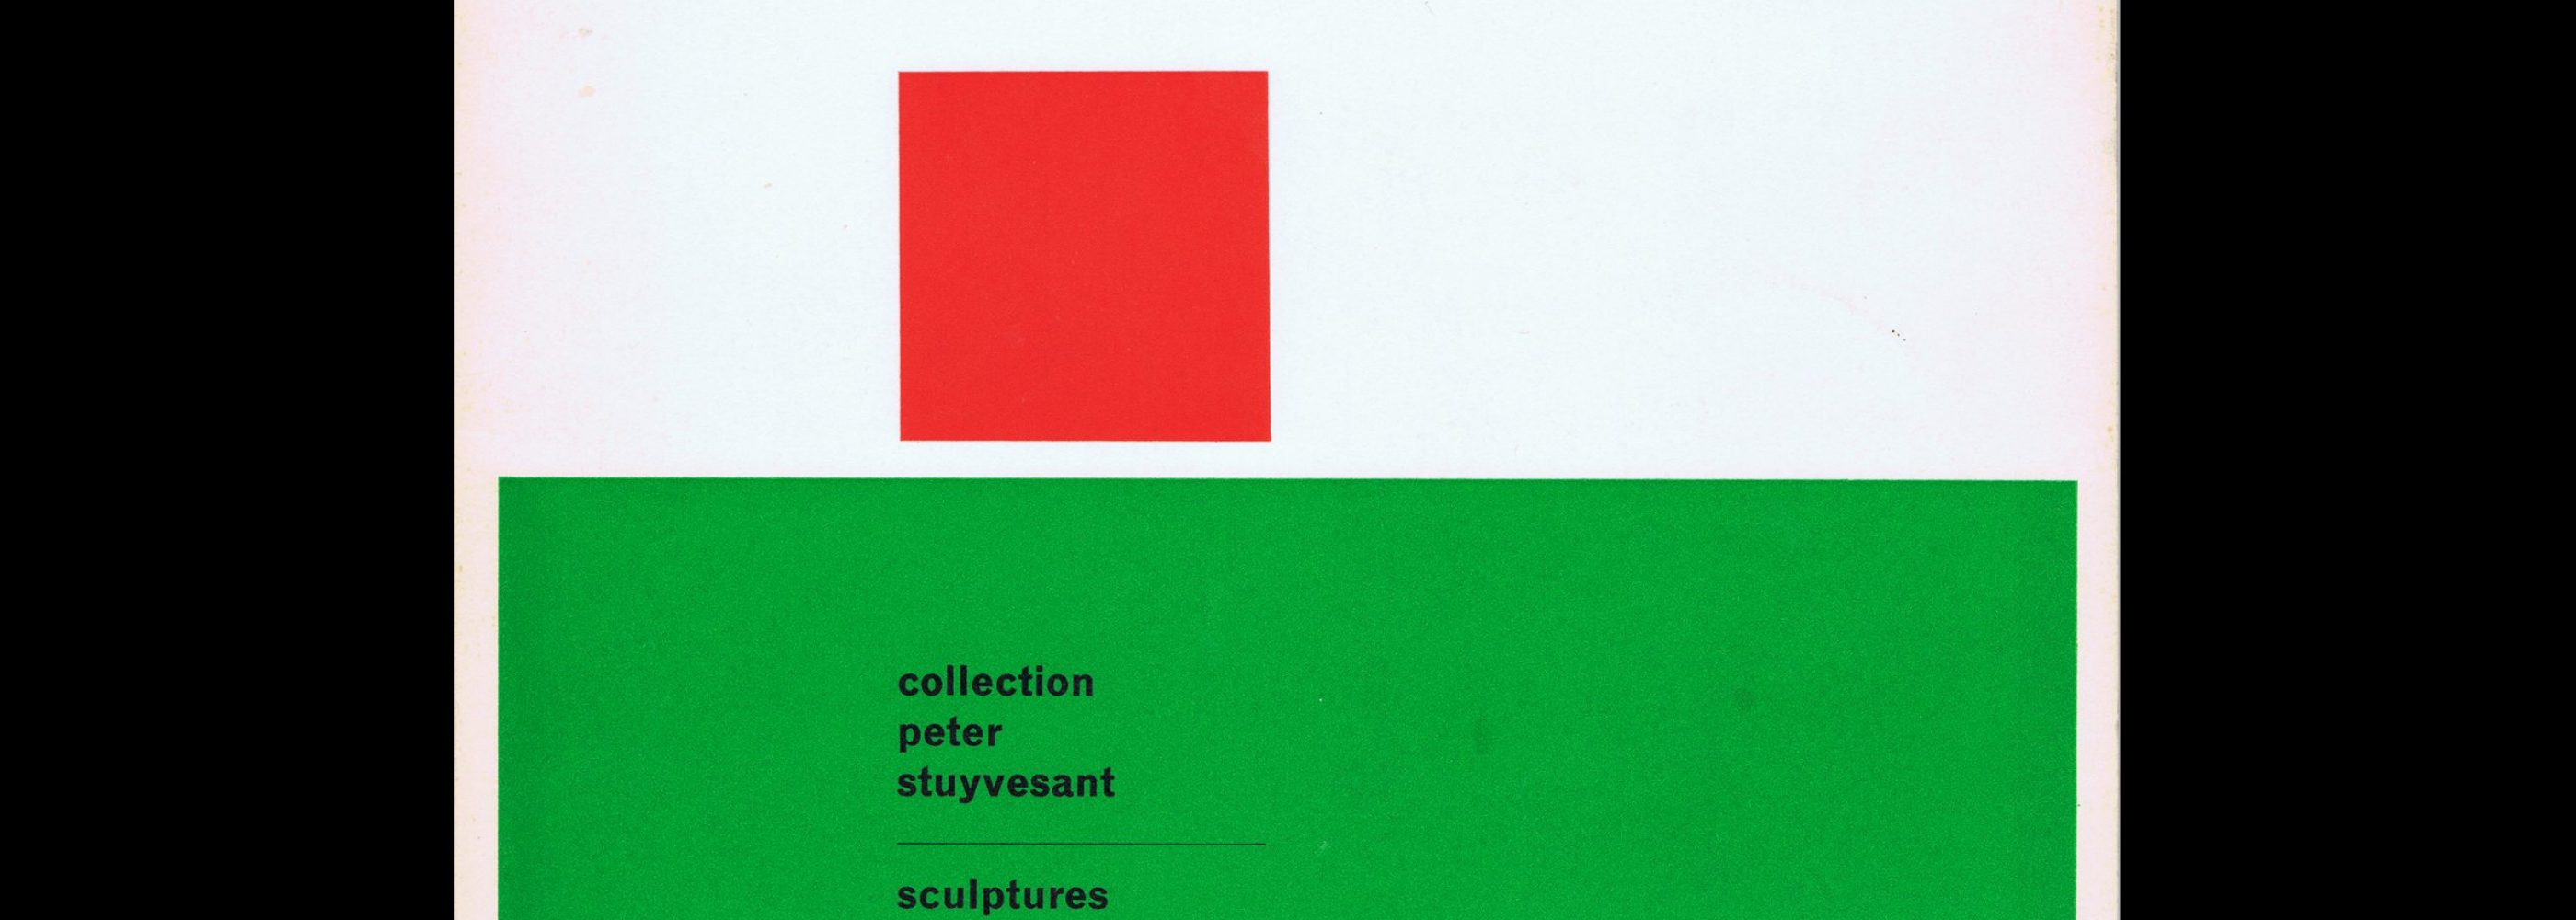 Collection Peter Stuyvesant, sculptures Italiennes contemporaines, Musée des Beaux Arts, 1966. Designed by Wim Crouwel (Total Design)